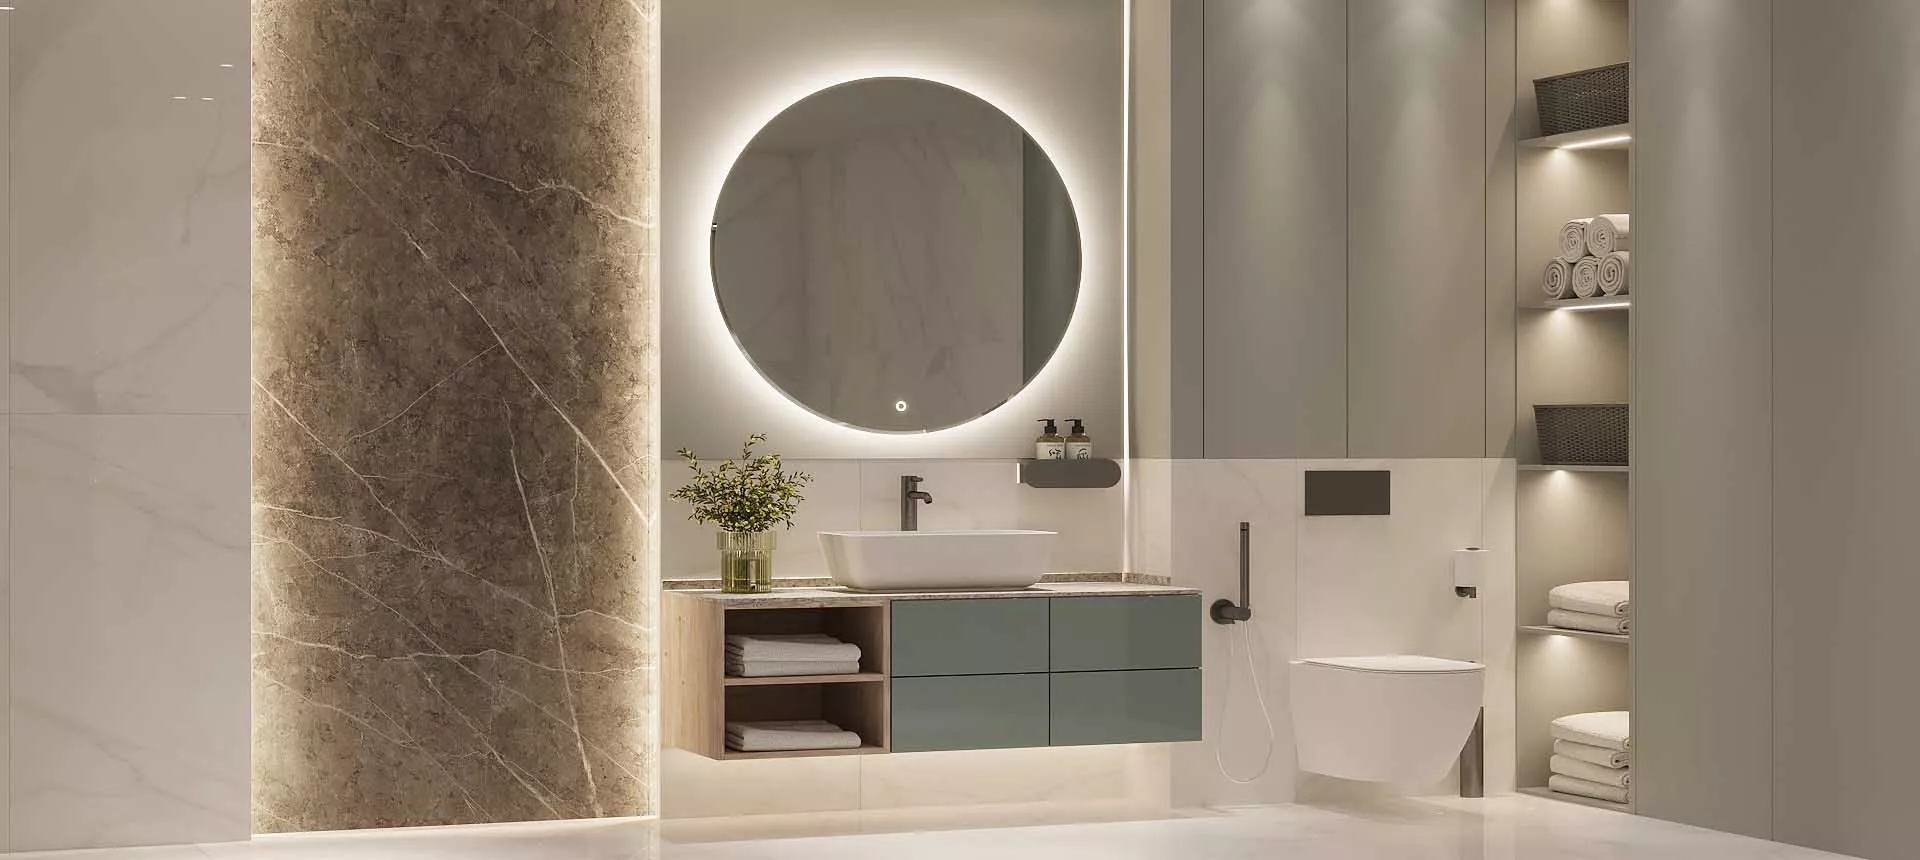 Элегантность и практичность в ванной мебели